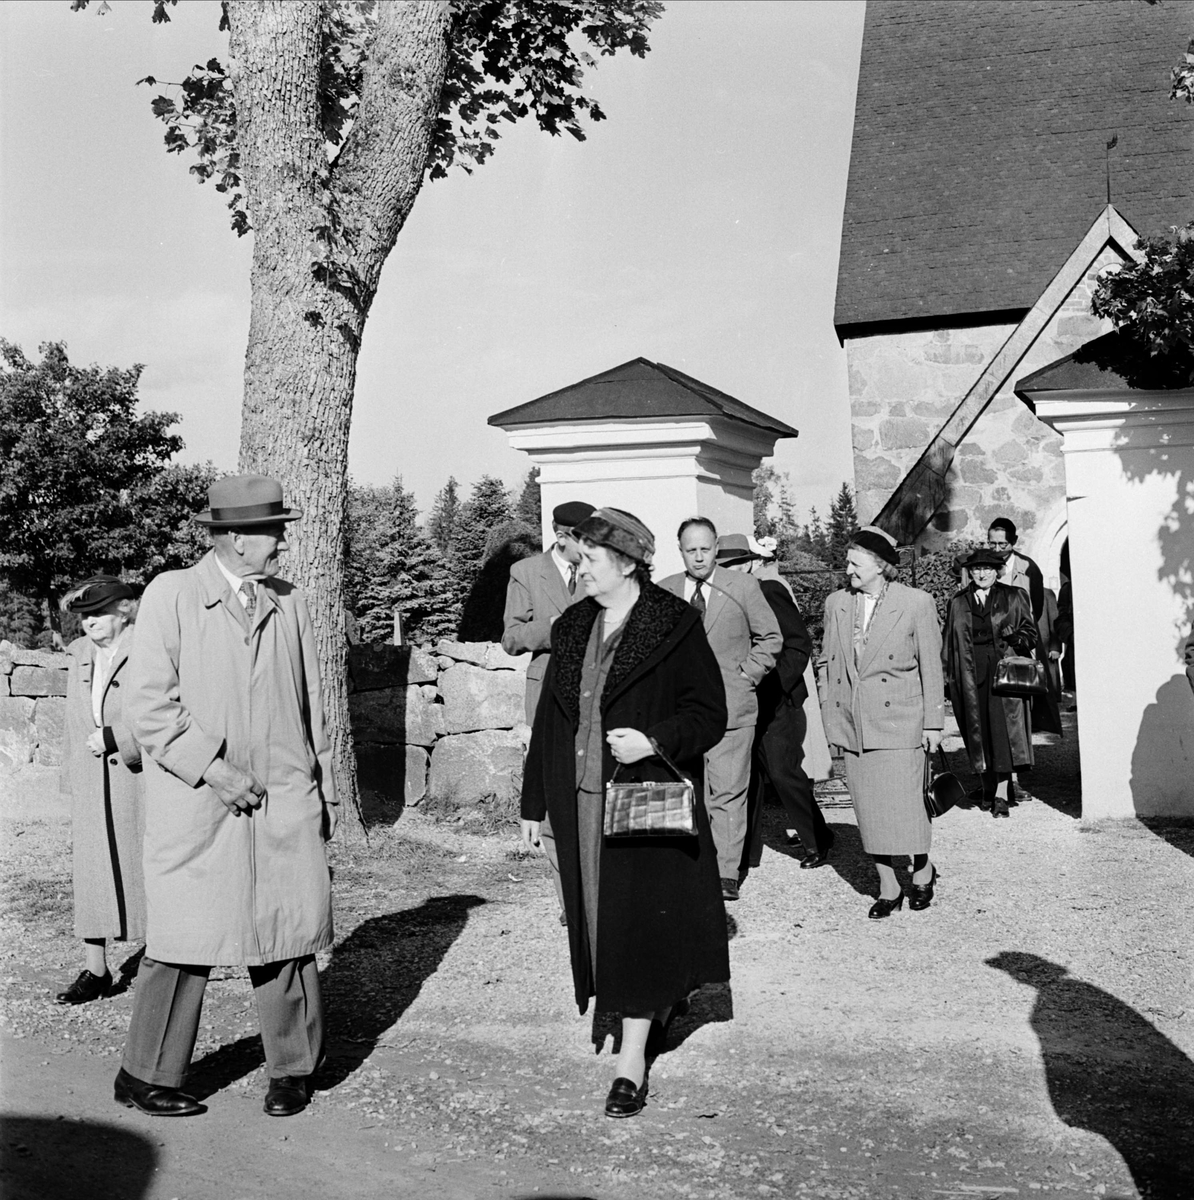 Upplands fornminnesförenings höstutflykt 1956, utanför Morkarla kyrka, Uppland